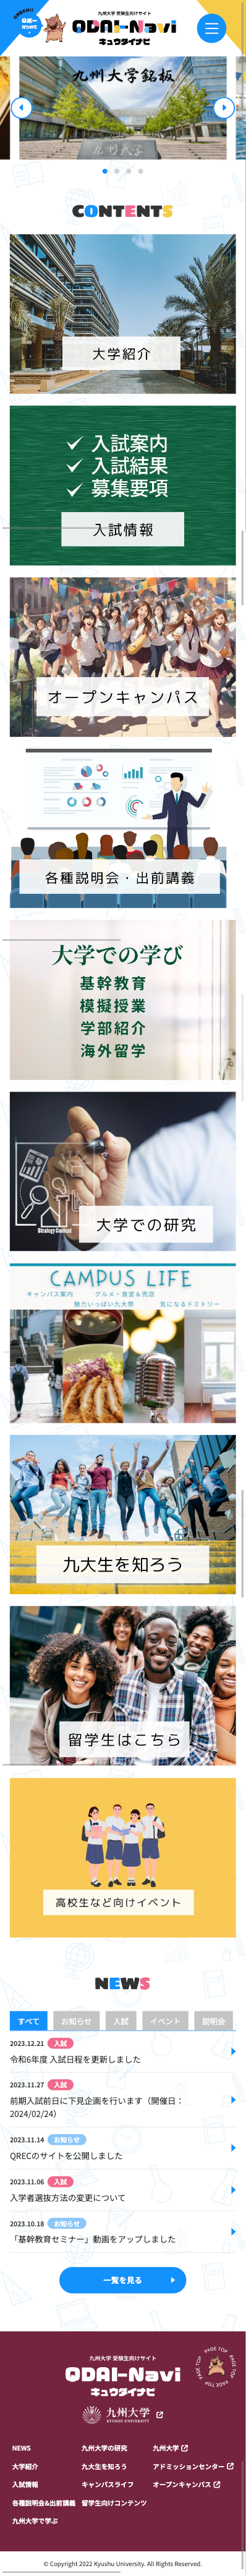 九州大学様 受験生向けサイト mobile image